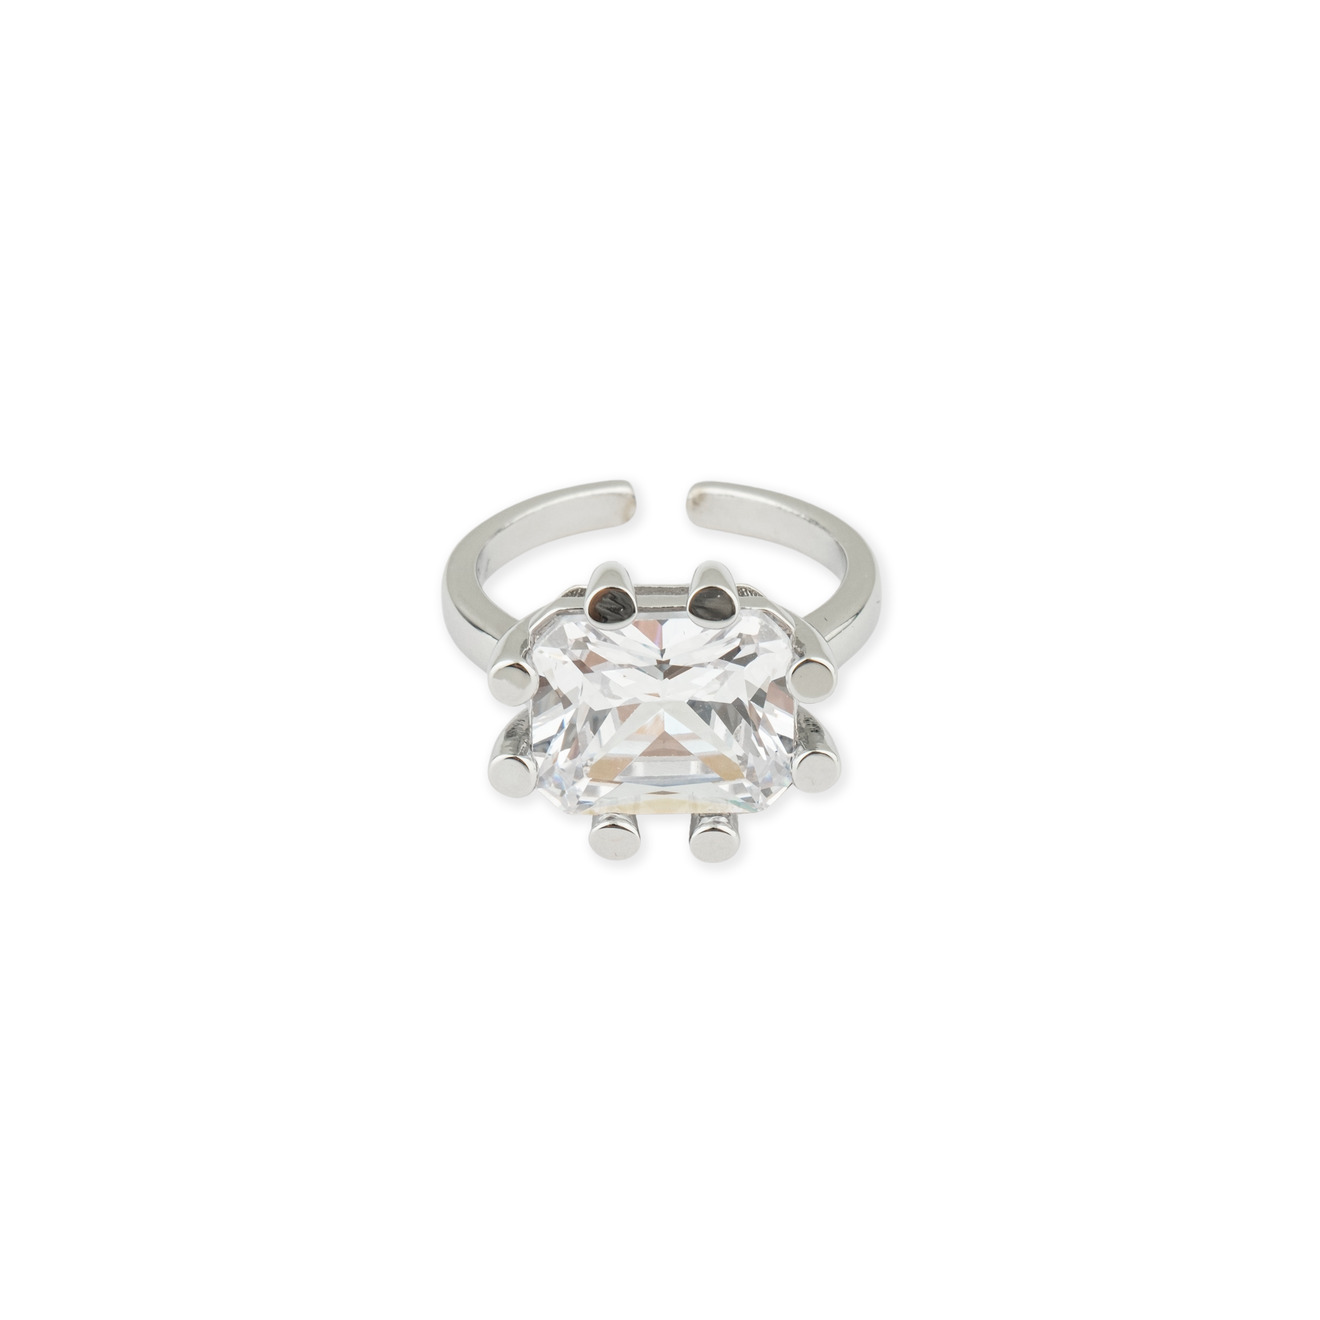 Herald Percy Серебристое кольцо с кристаллом цена и фото